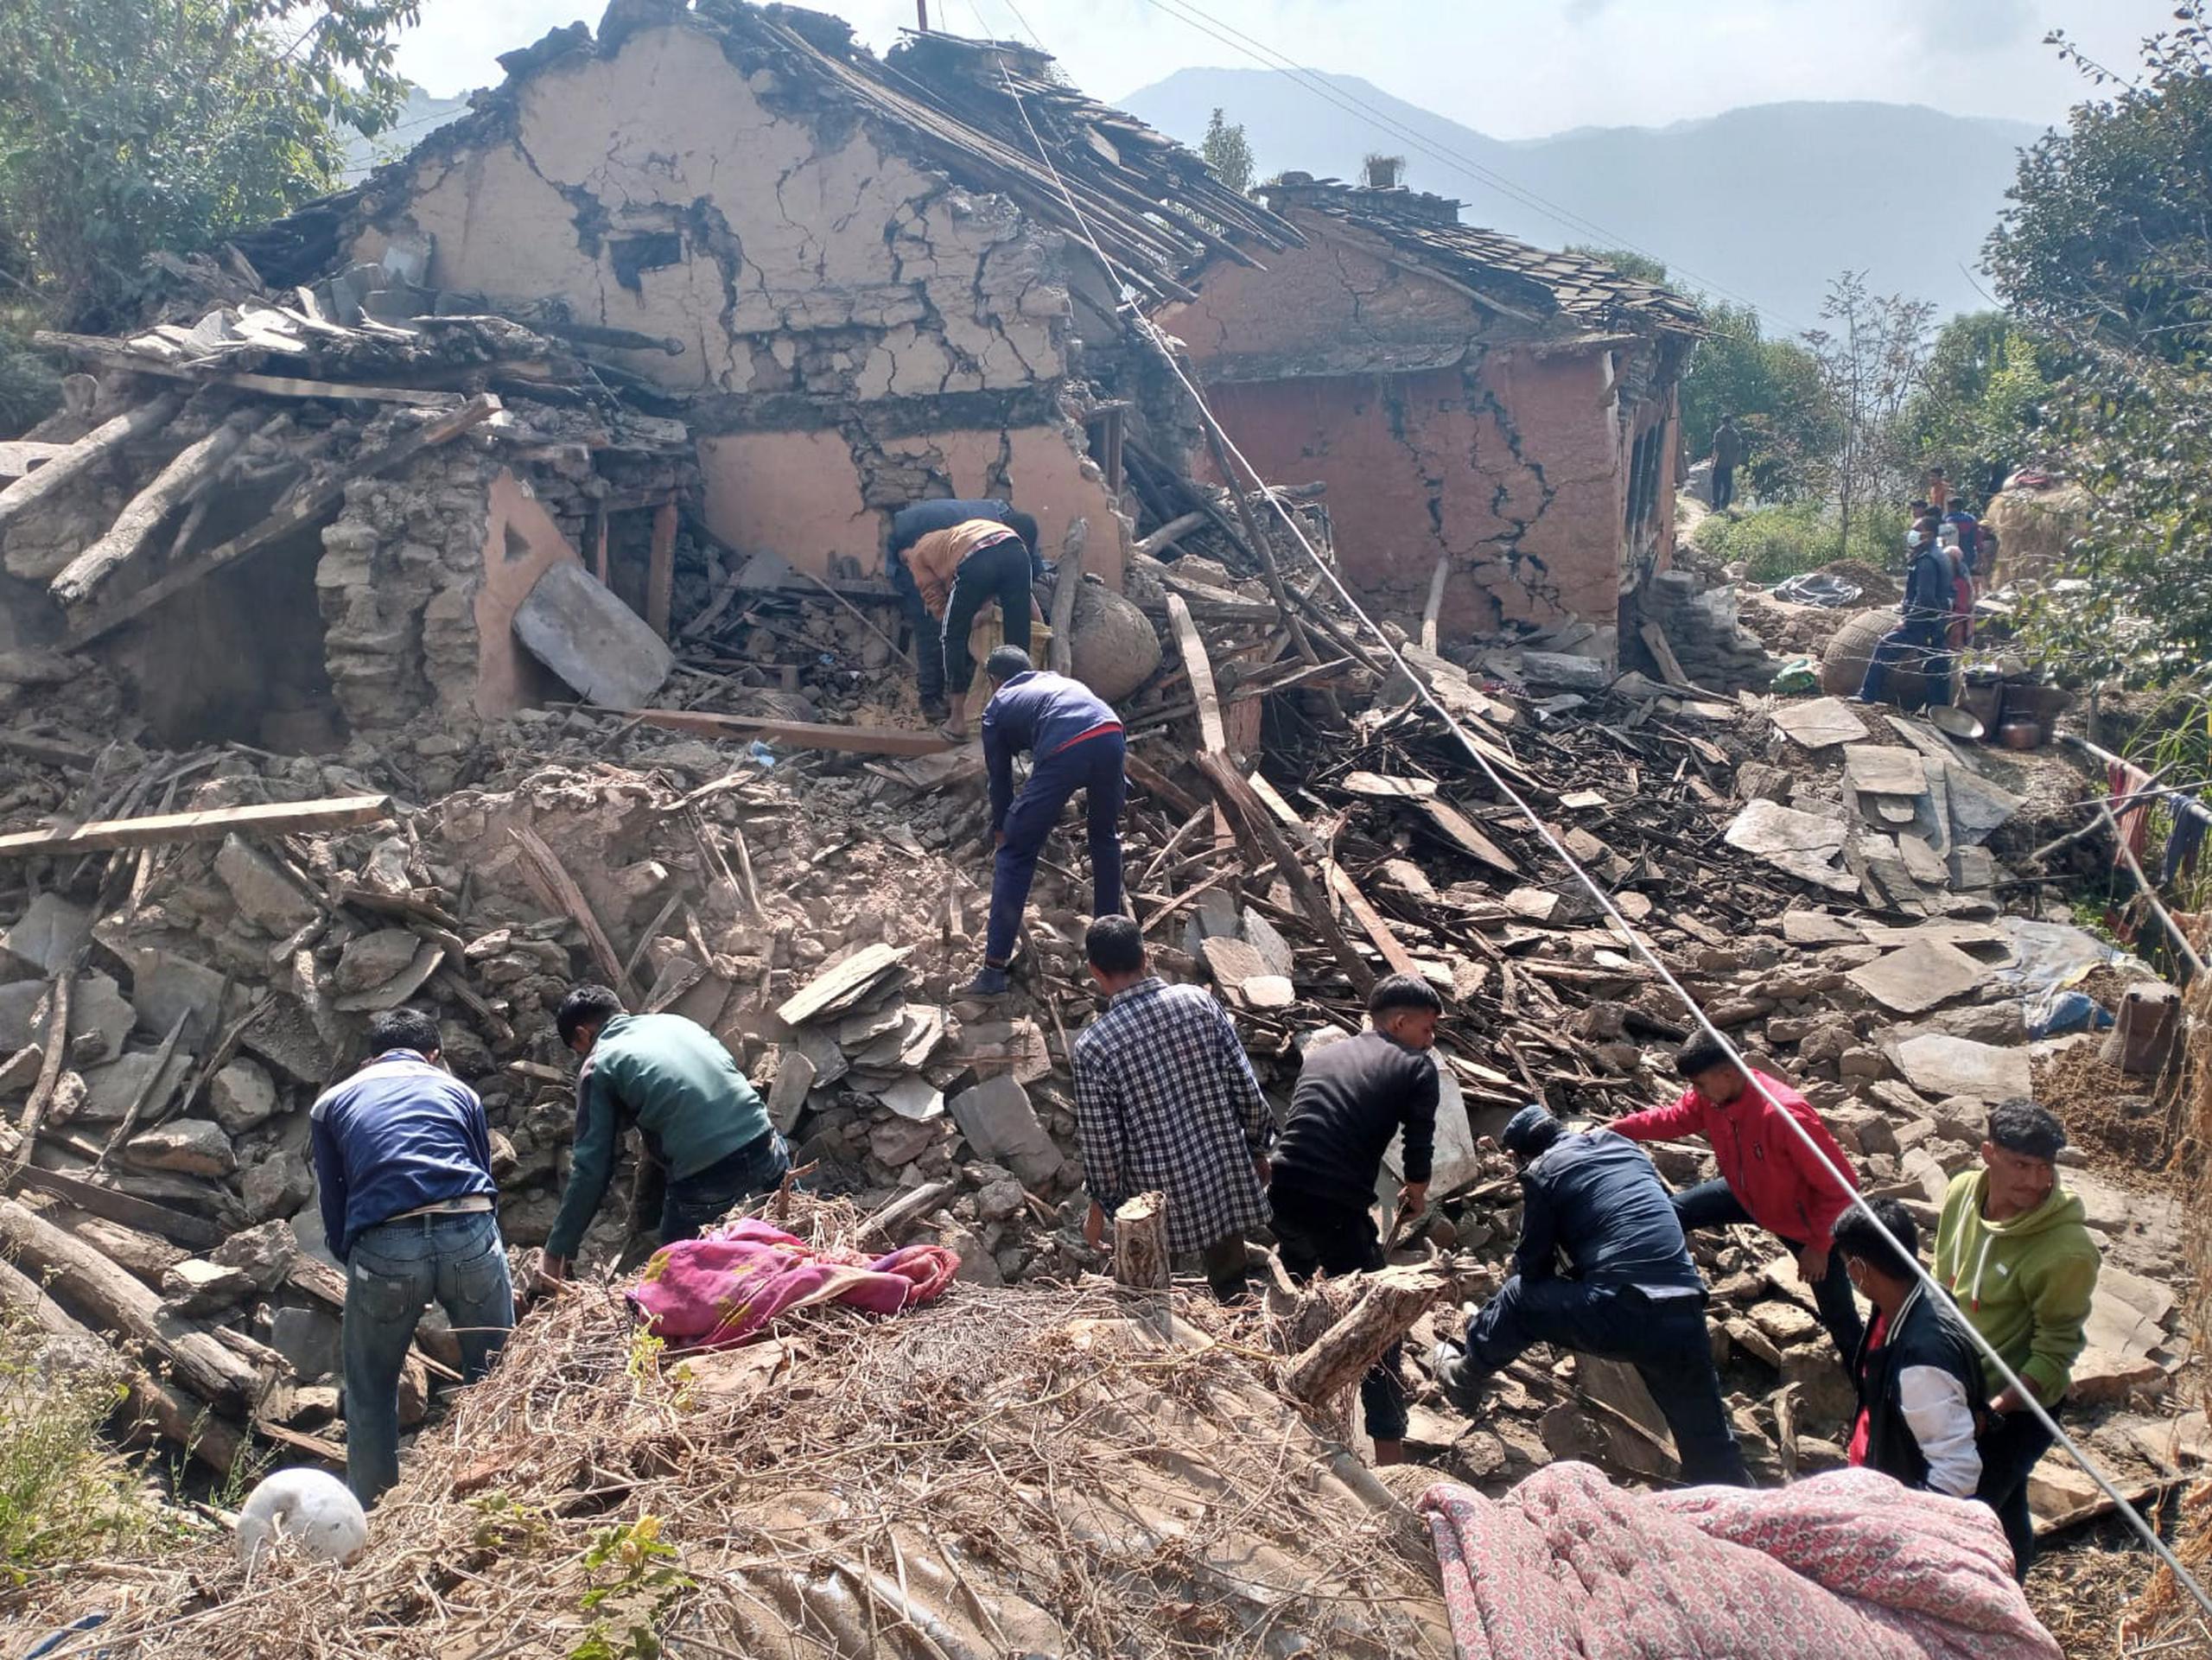 Todo comenzó con un pequeño temblor la noche del martes, al que siguió “otra pequeña sacudida seguida de temblores fuertes” dos horas después, dijo a EFE por teléfono Khadak Dhami, uno de los habitantes del pueblo de Thadagaun donde se produjeron las seis muertes.